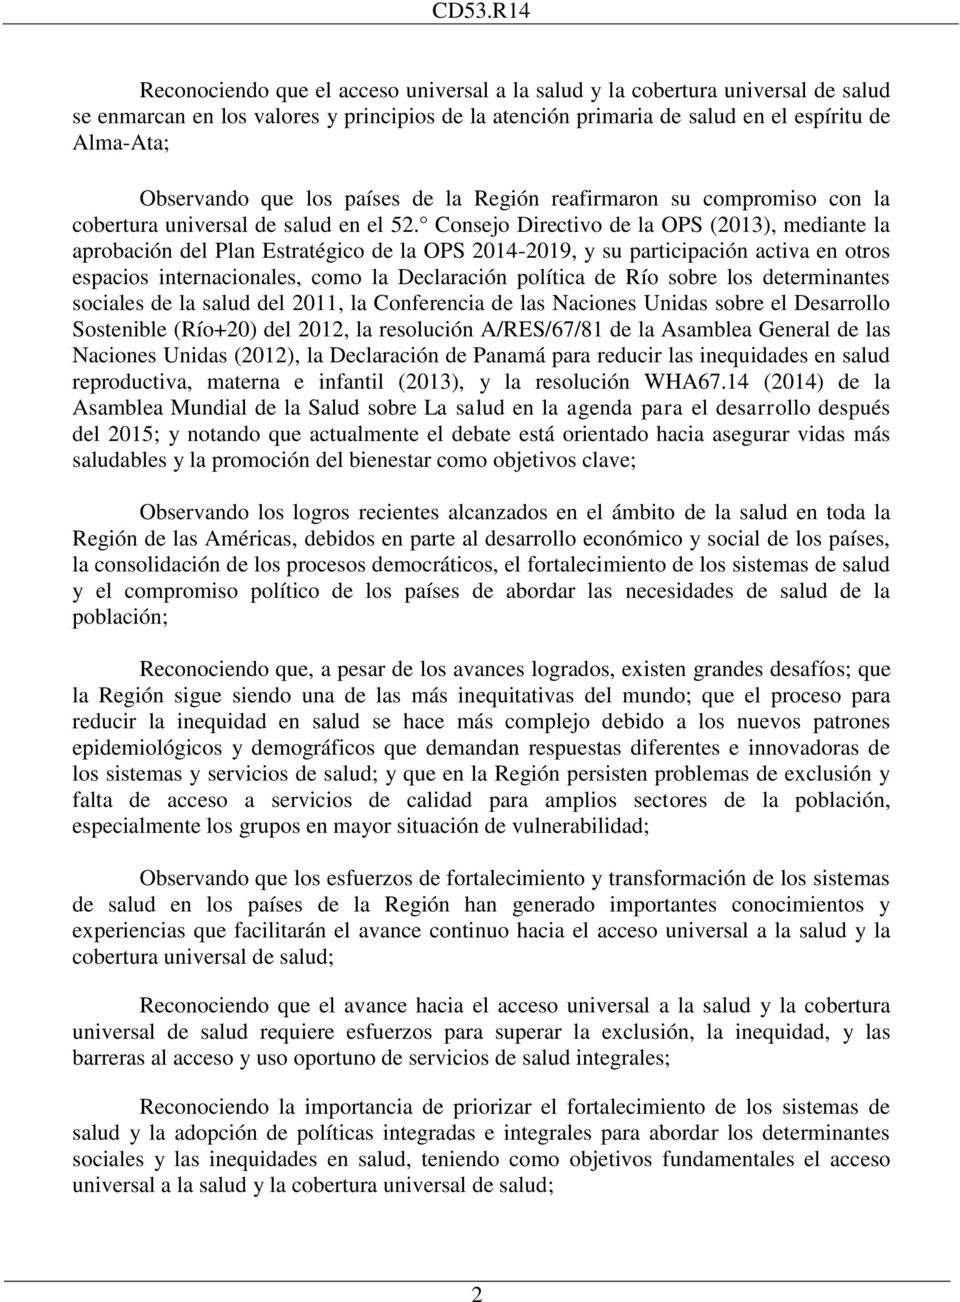 Consejo Directivo de la OPS (2013), mediante la aprobación del Plan Estratégico de la OPS 2014-2019, y su participación activa en otros espacios internacionales, como la Declaración política de Río